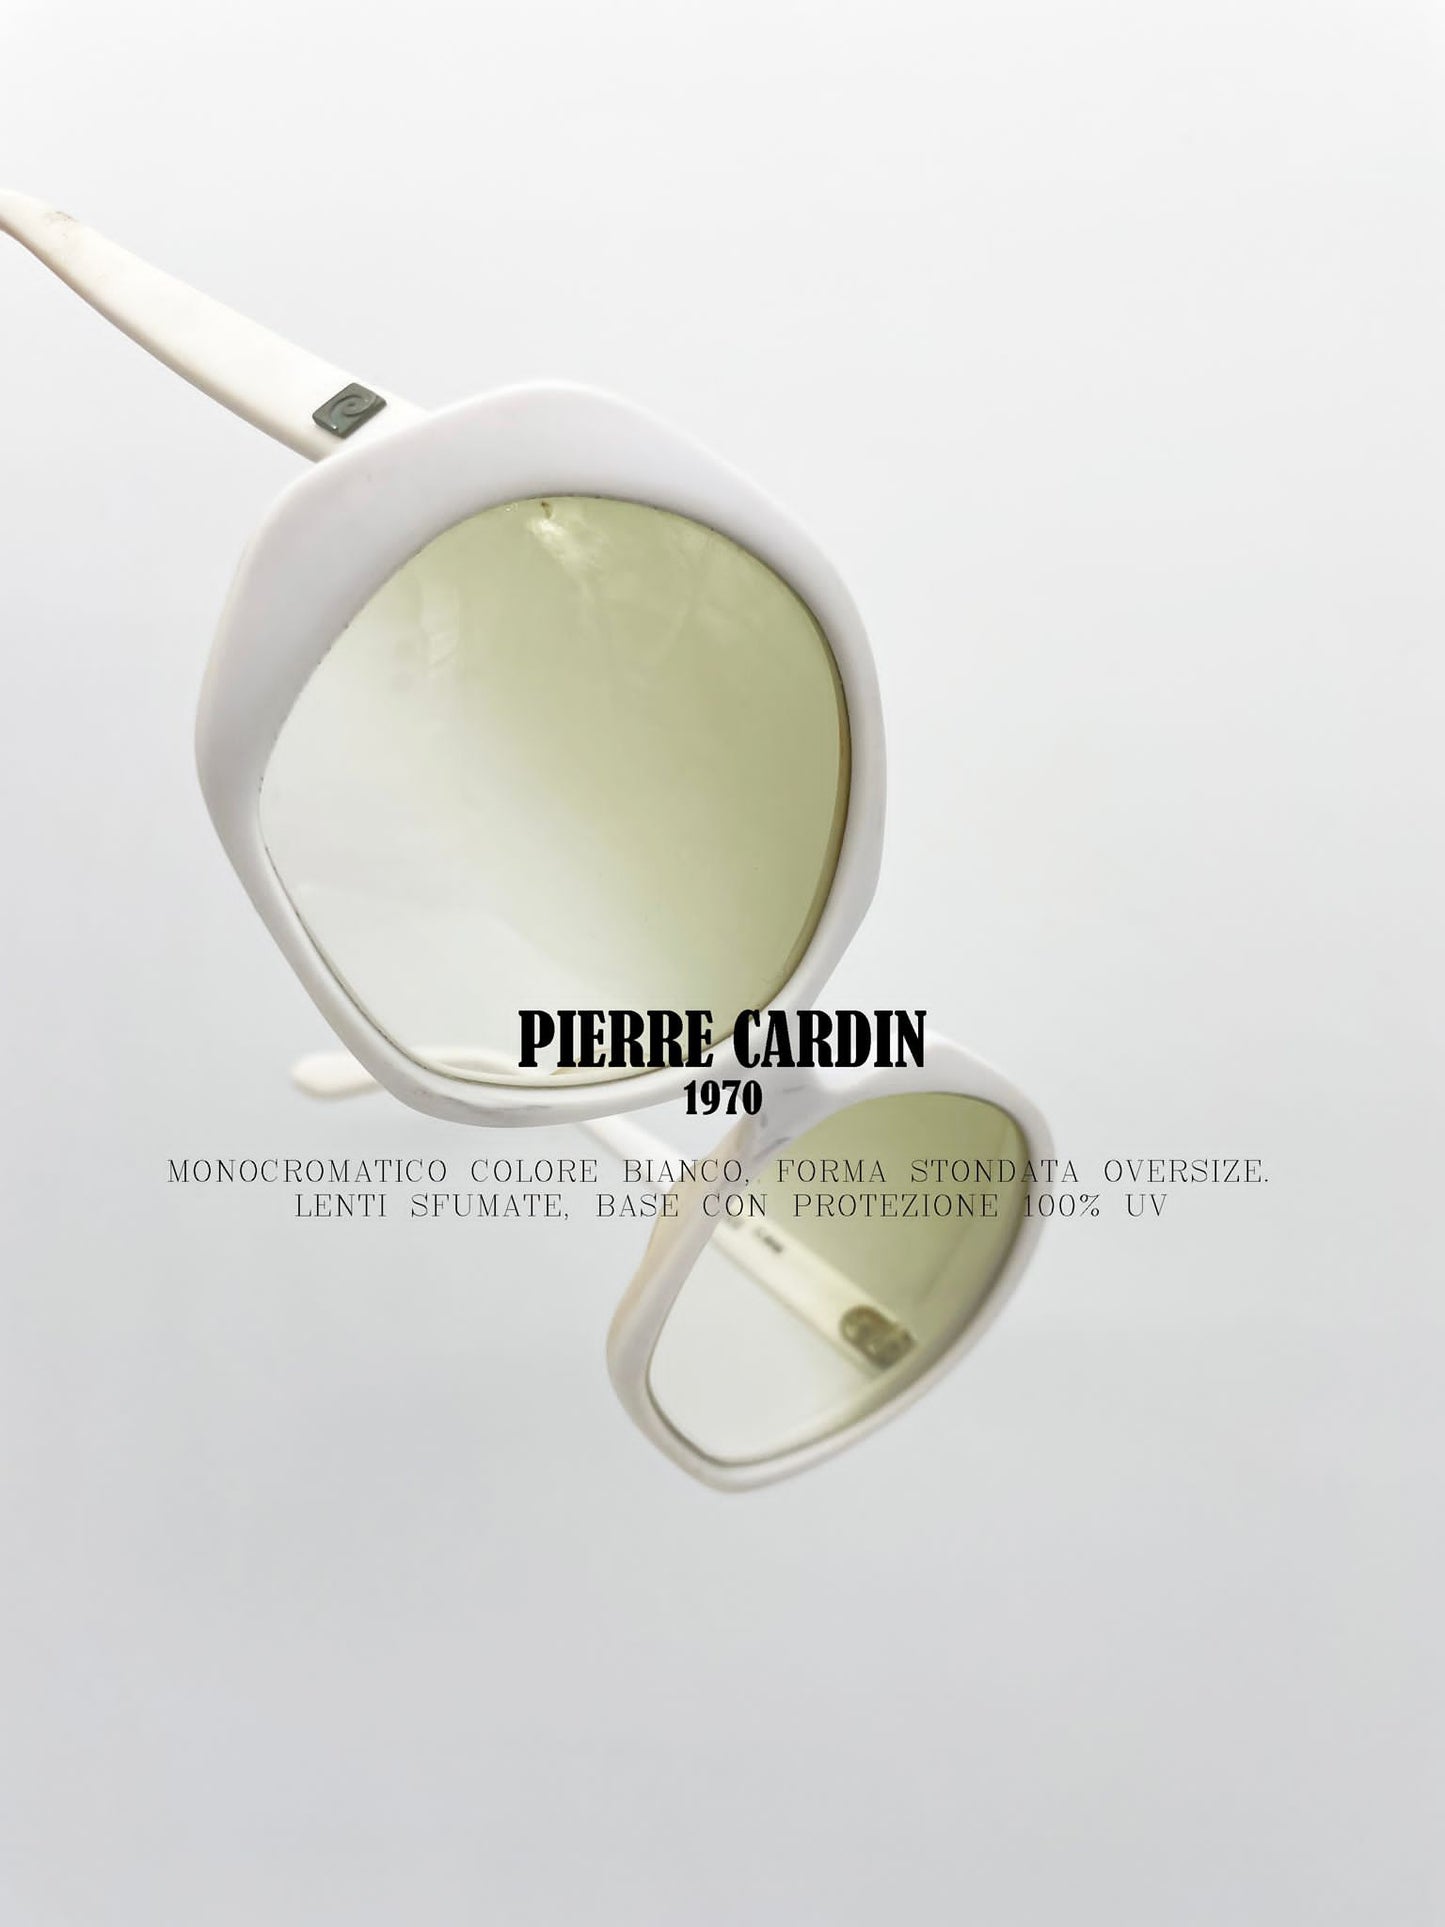 Sonnenbrille Pierre Cardin 1970er Jahre